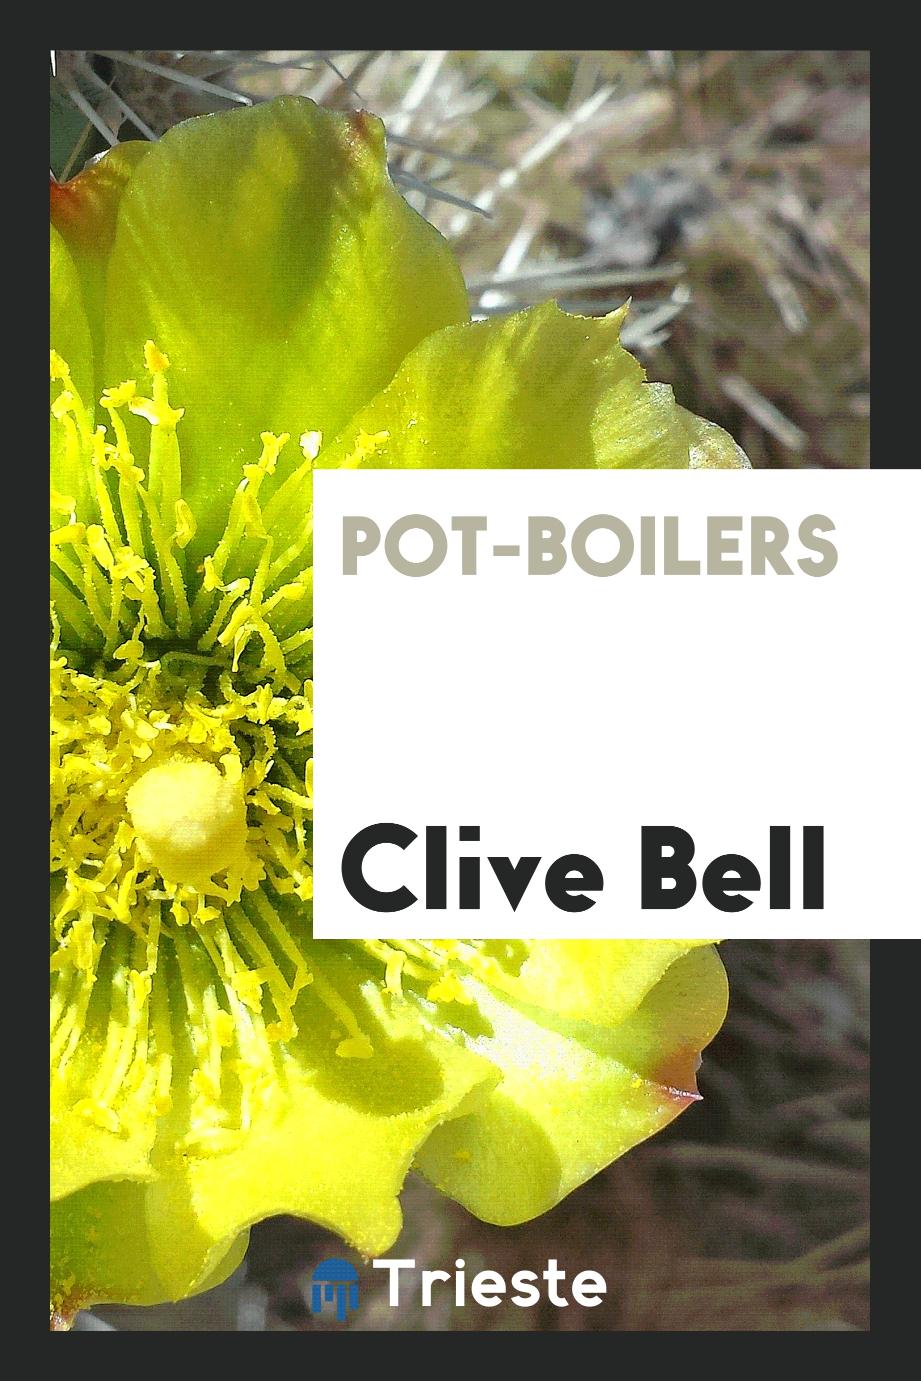 Pot-boilers